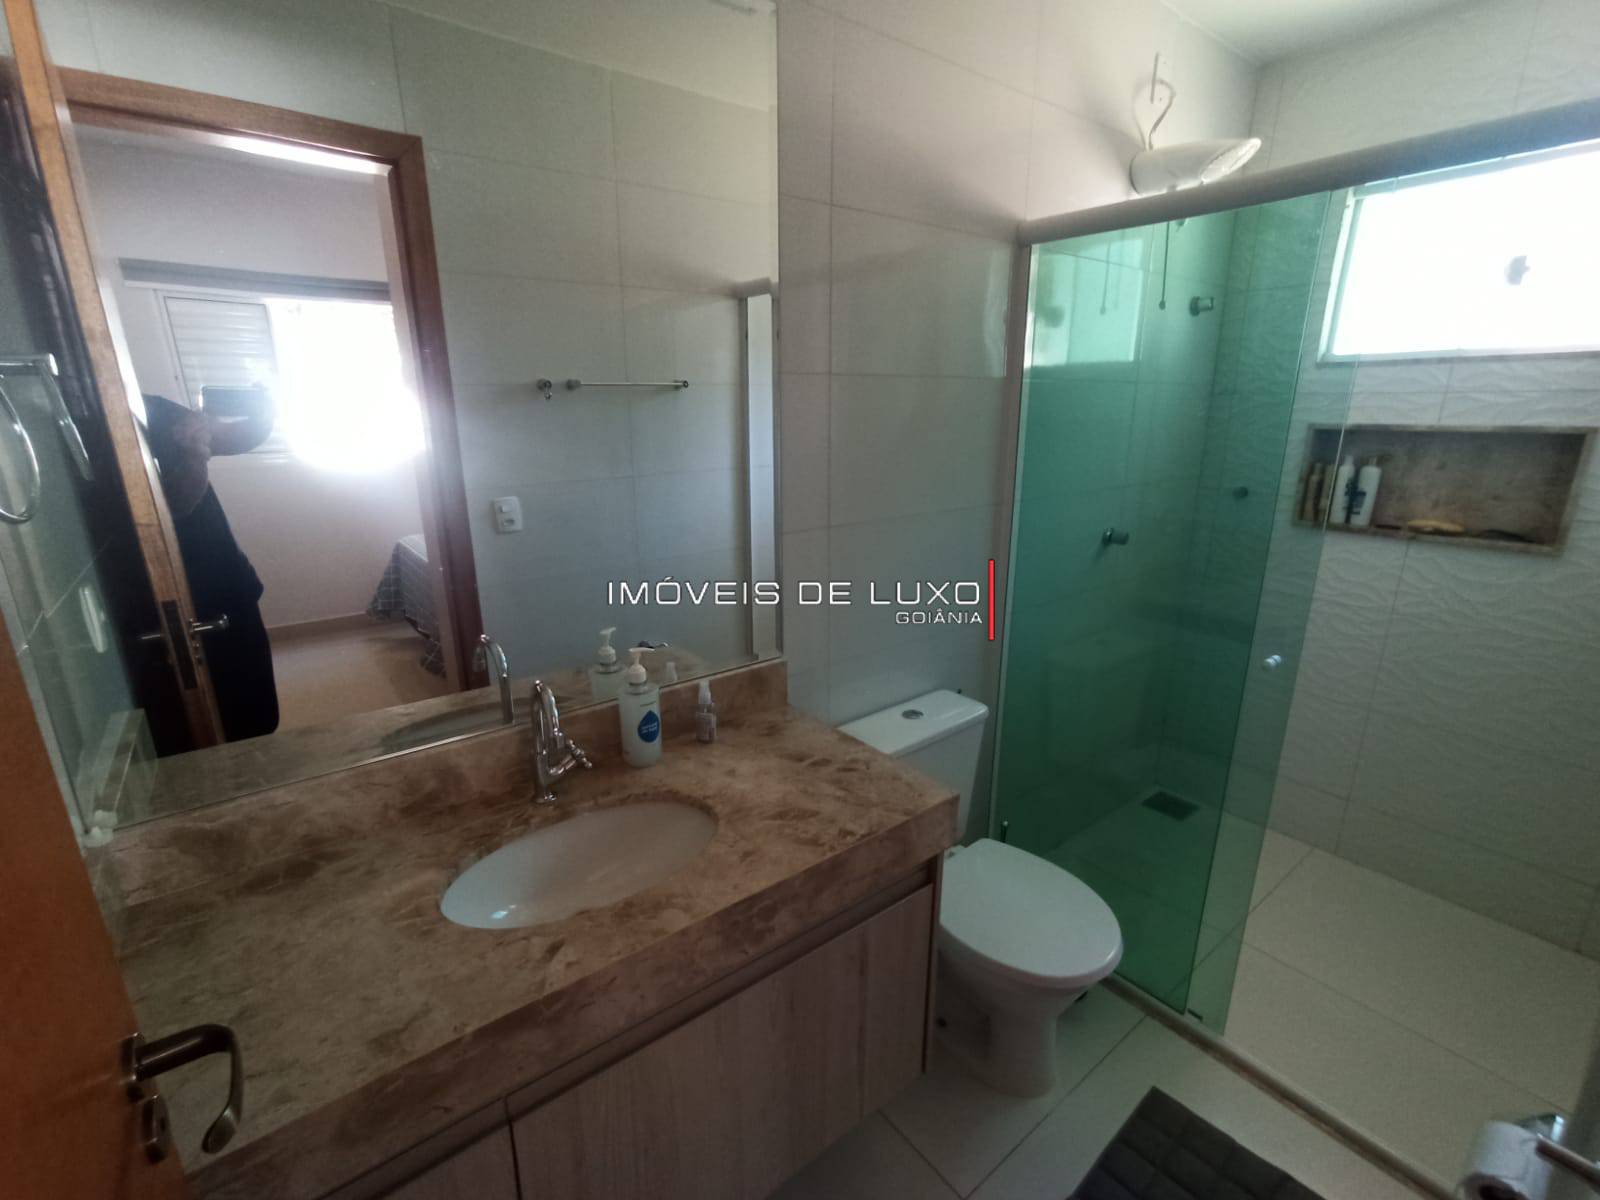 Imóveis de Luxo - Casa 2 suites com projeto moderno e arrojado!! Cond Villa Verde